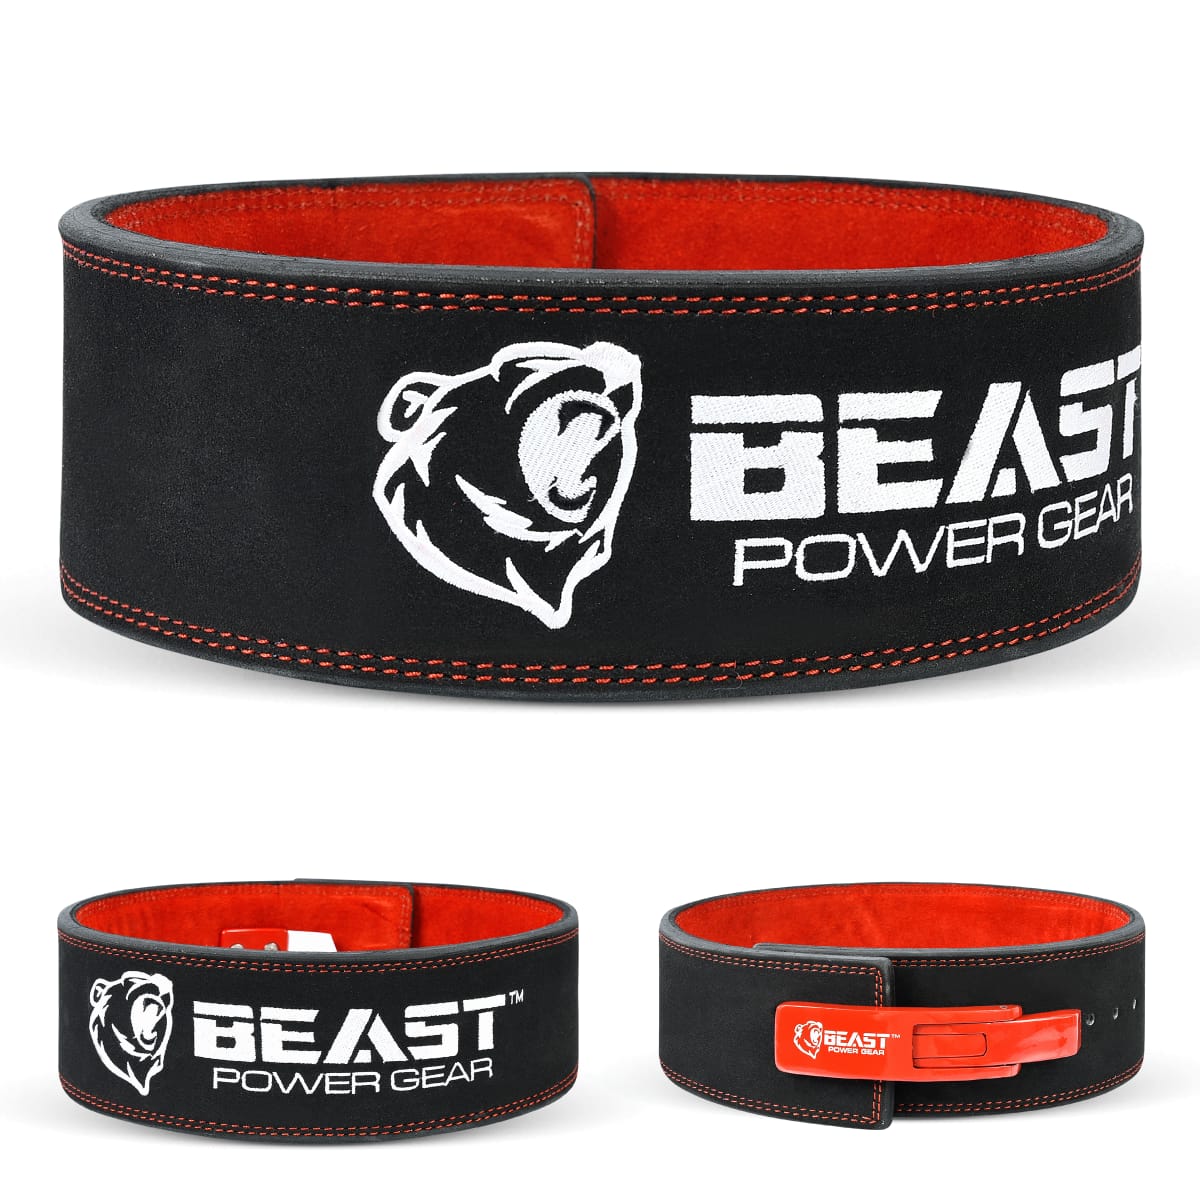 Beast Gear PowerBelt - Premium Double Prong Powerlifting Belt 4 x